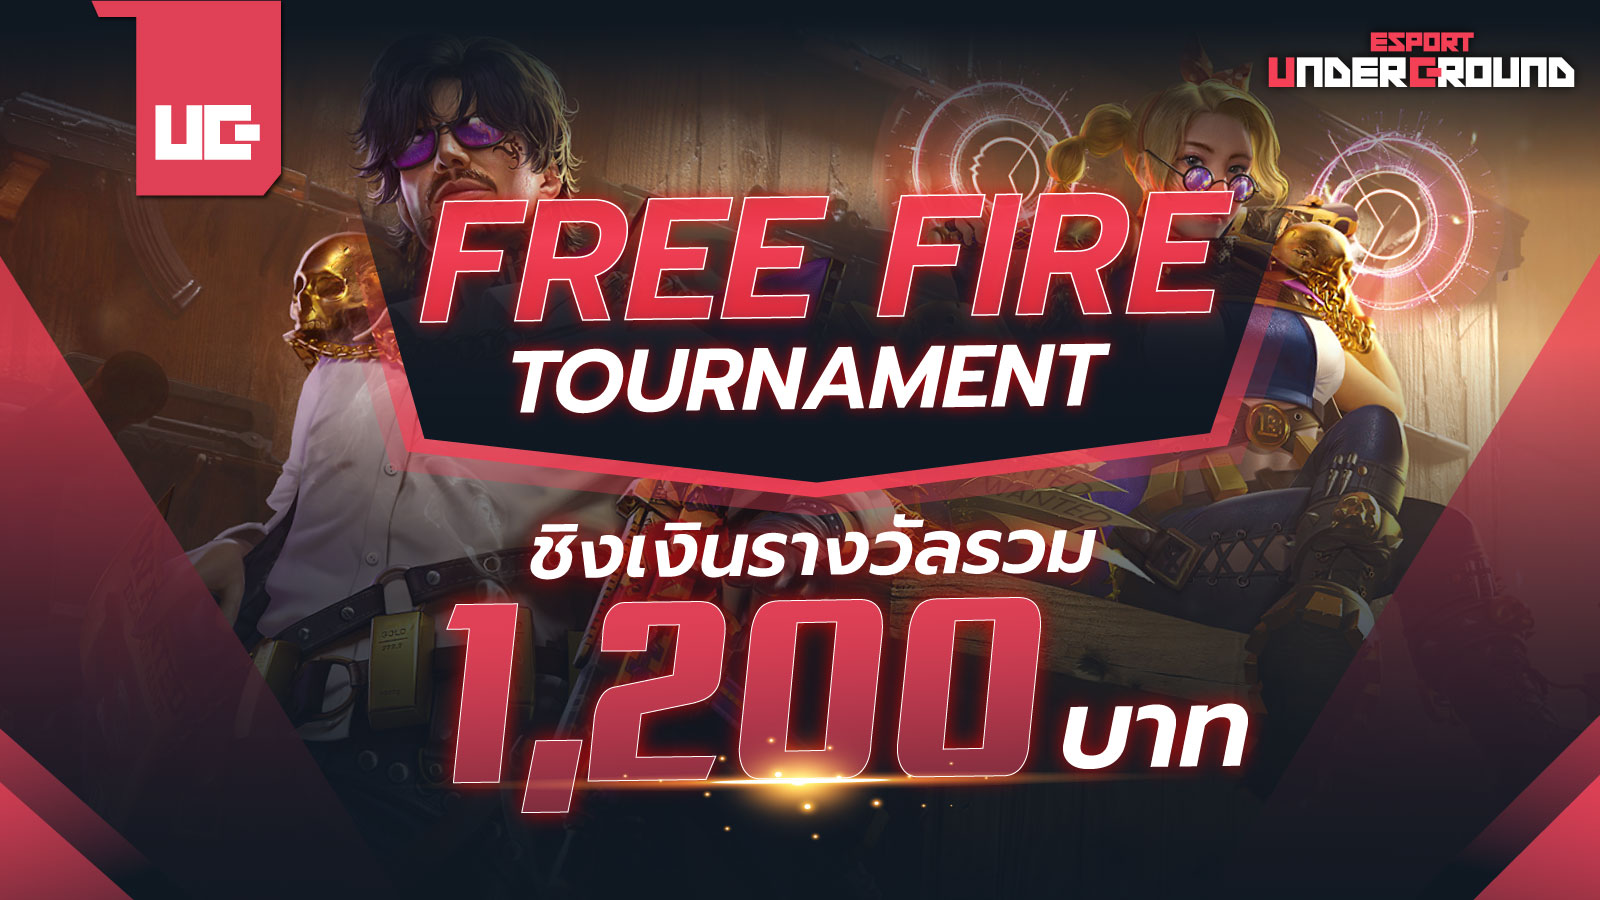 Free Fire Tournament by UG ชิงเงินรางวัล 1,200 บาท